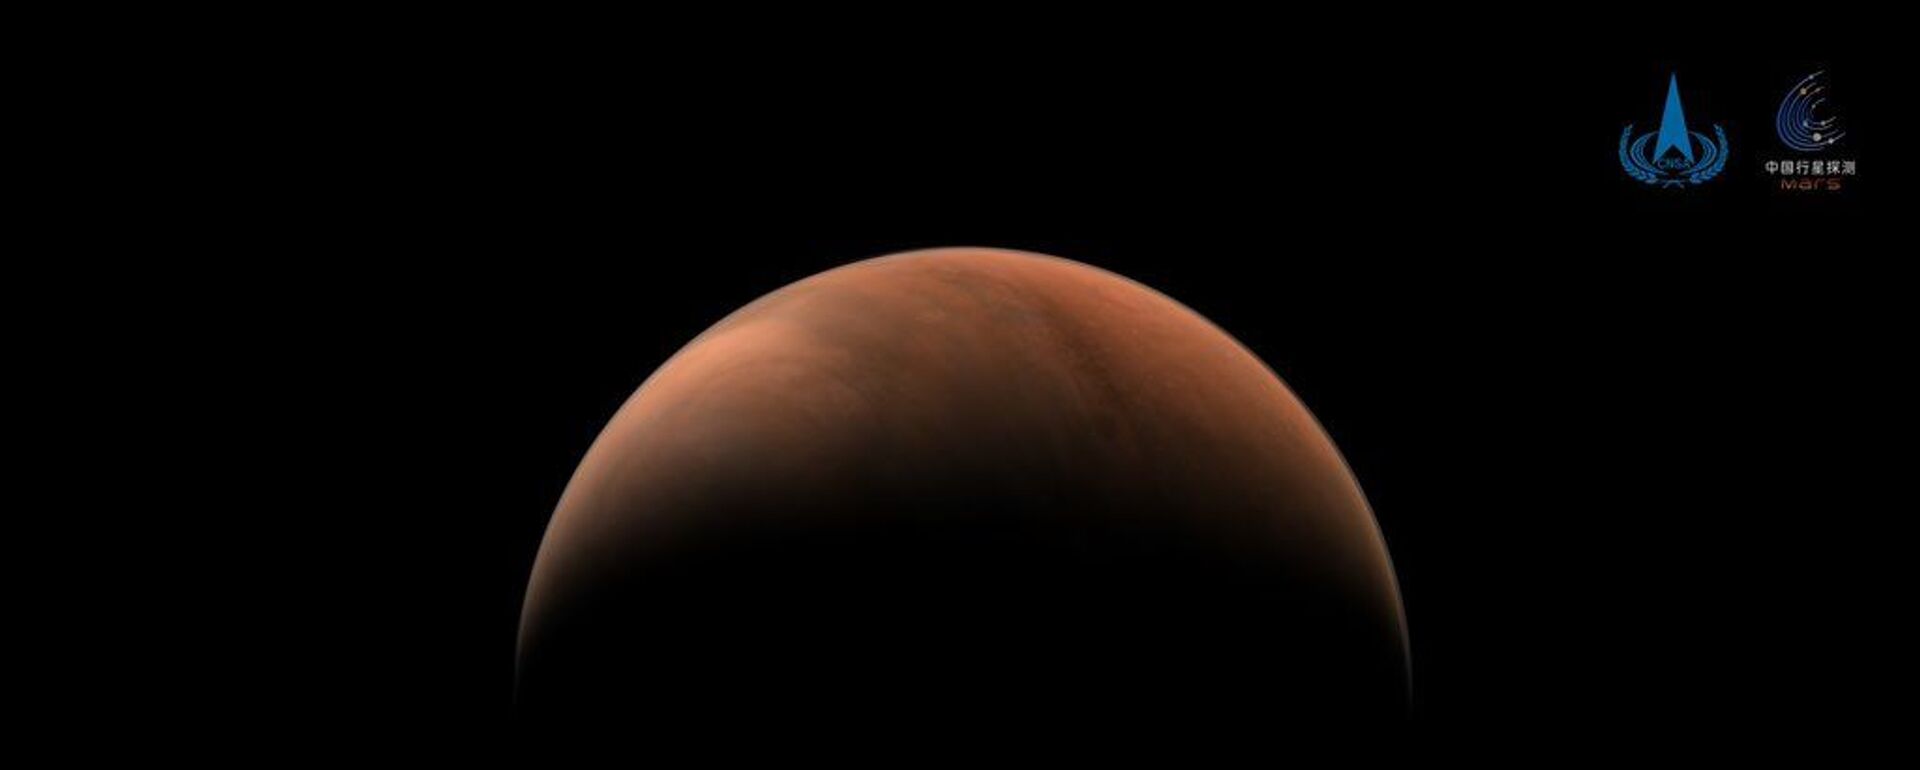 Çin'in Mars keşif aracı Tianwen-1, gezegenin iki tarafından fotoğraf gönderdi - Sputnik Türkiye, 1920, 26.03.2021